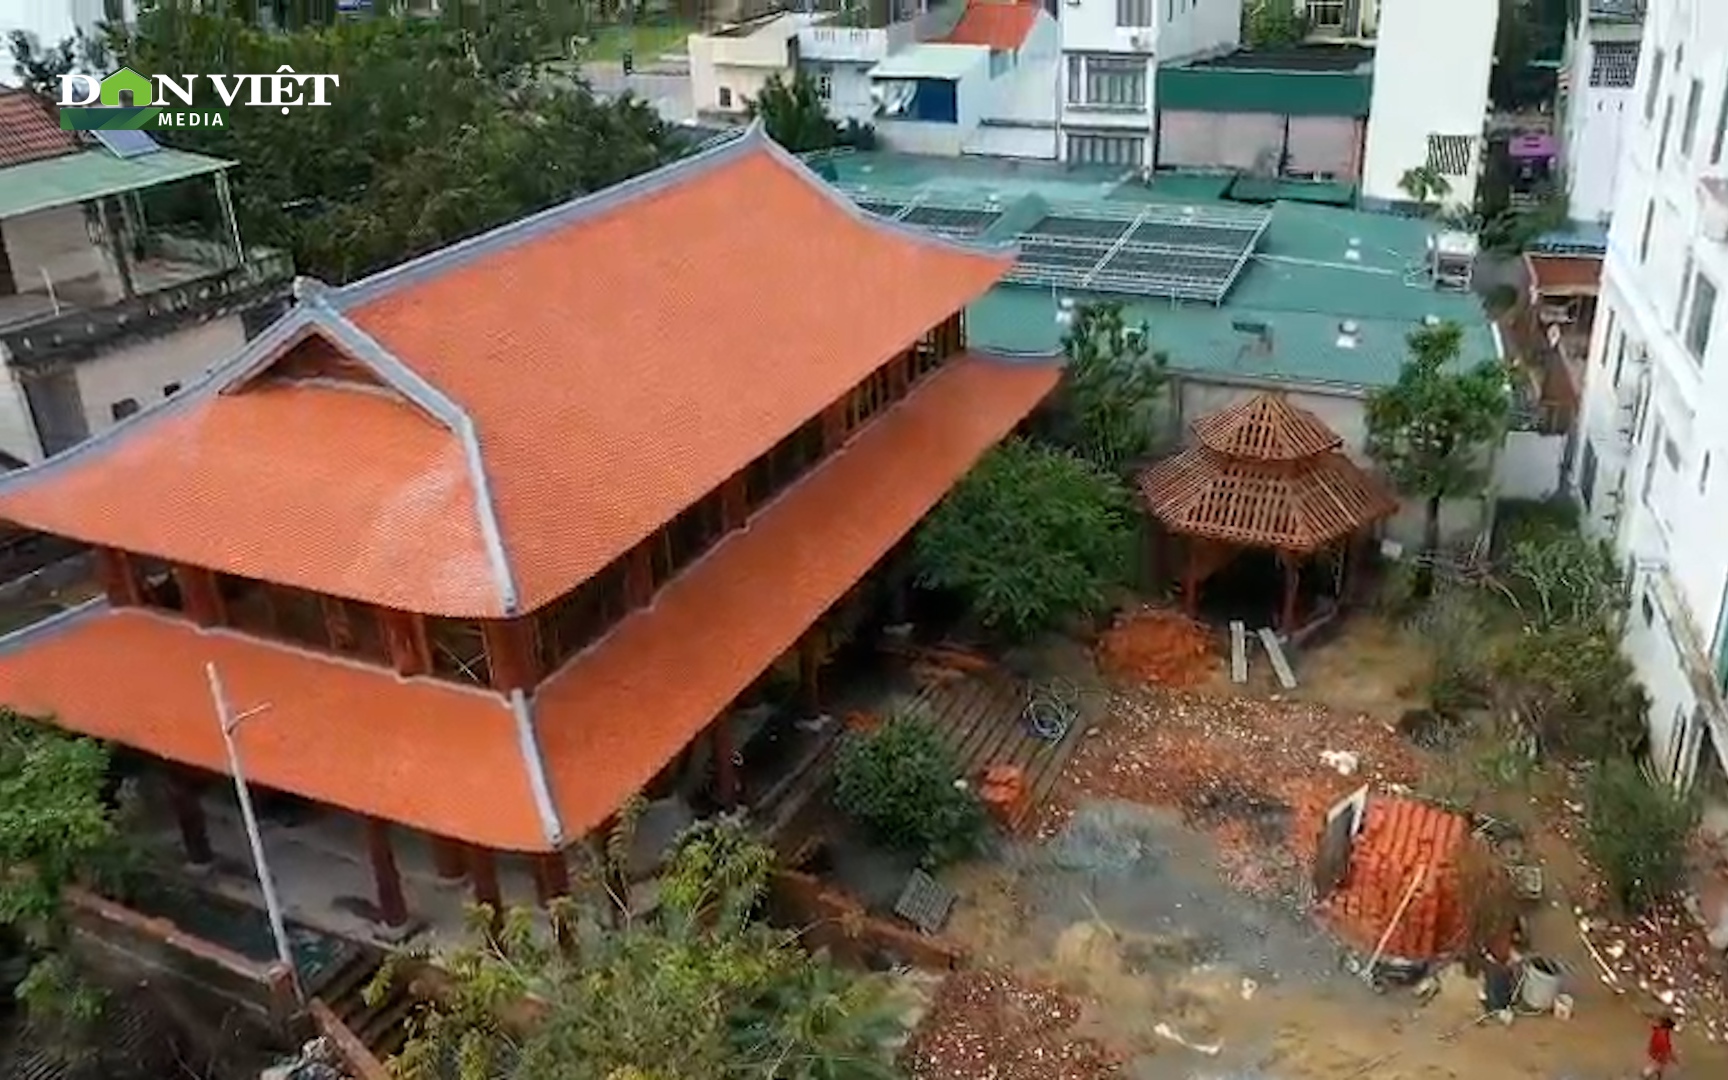 “Biệt phủ” trái phép ở Quảng Ngãi bị lệnh tháo dỡ, nhưng vẫn tiếp tục hoàn thiện công trình 